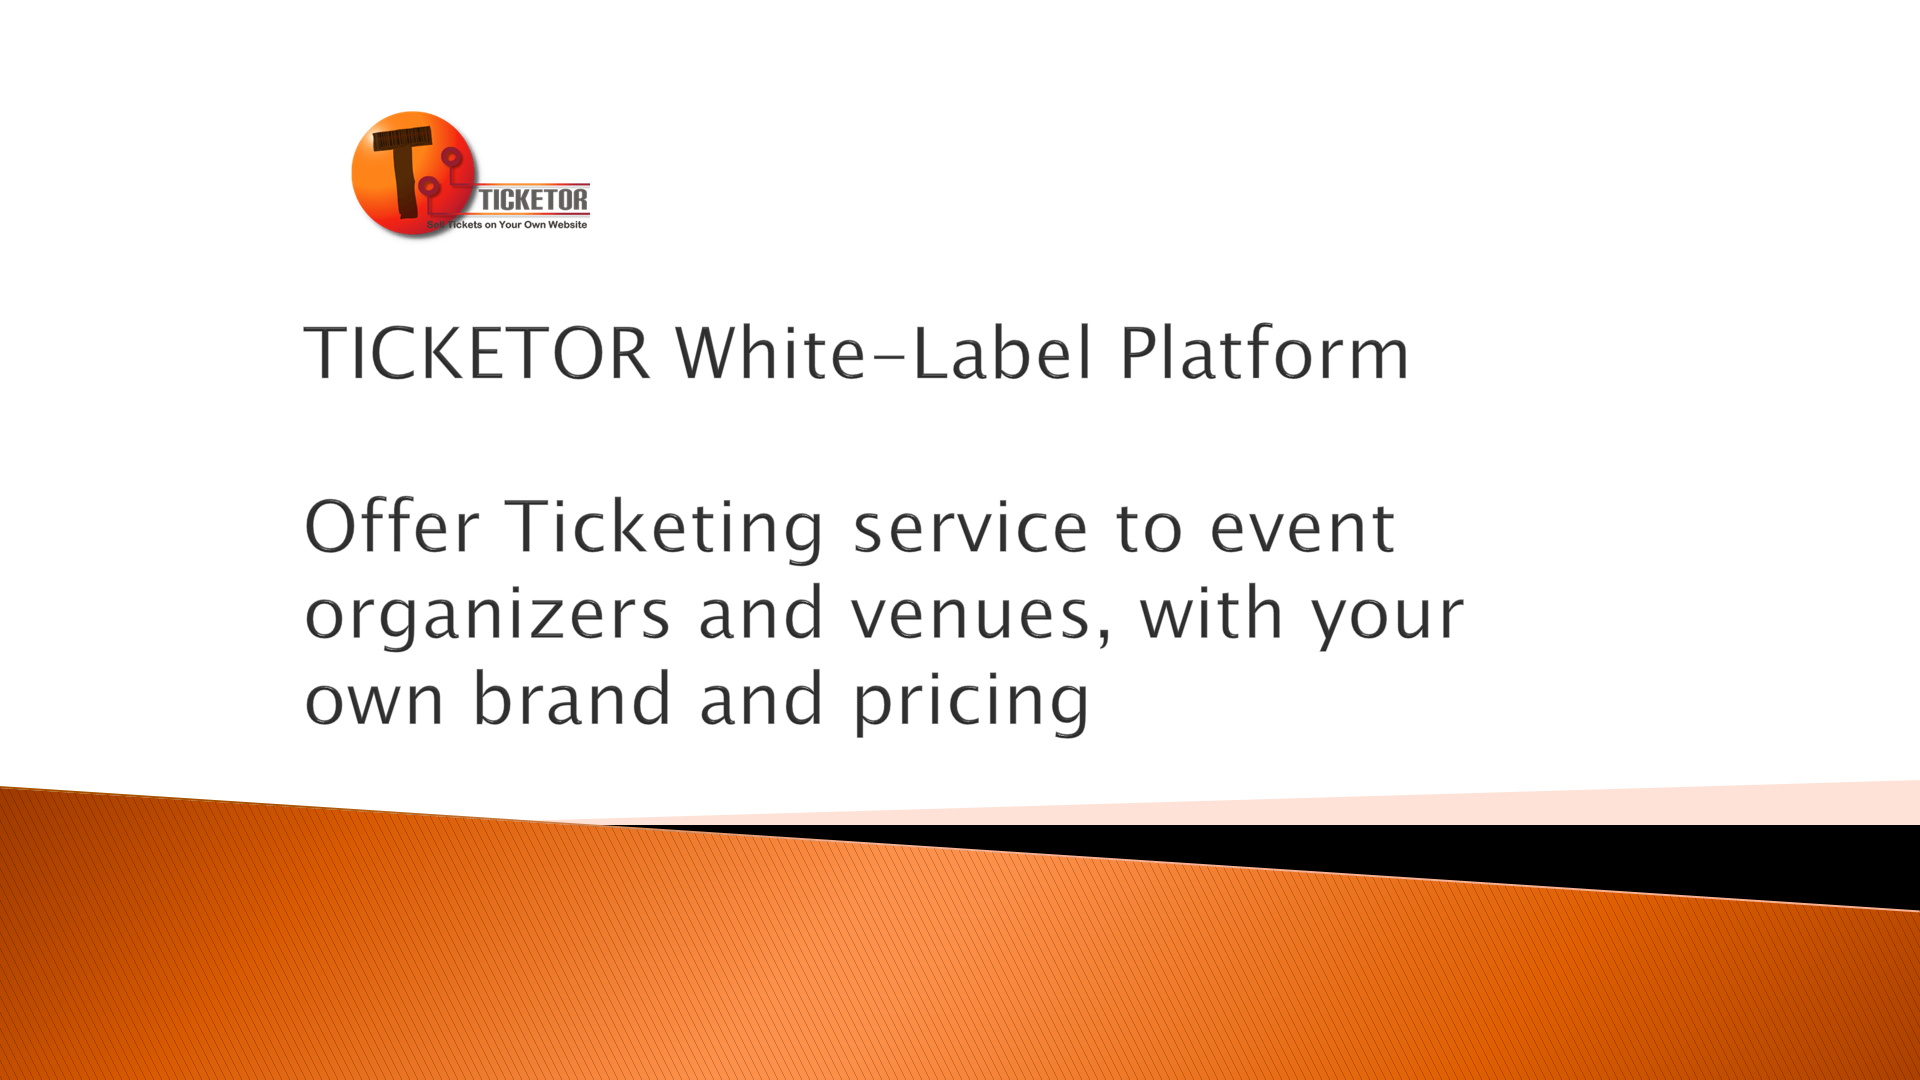 Plataforma Ticketor Marca Blanca